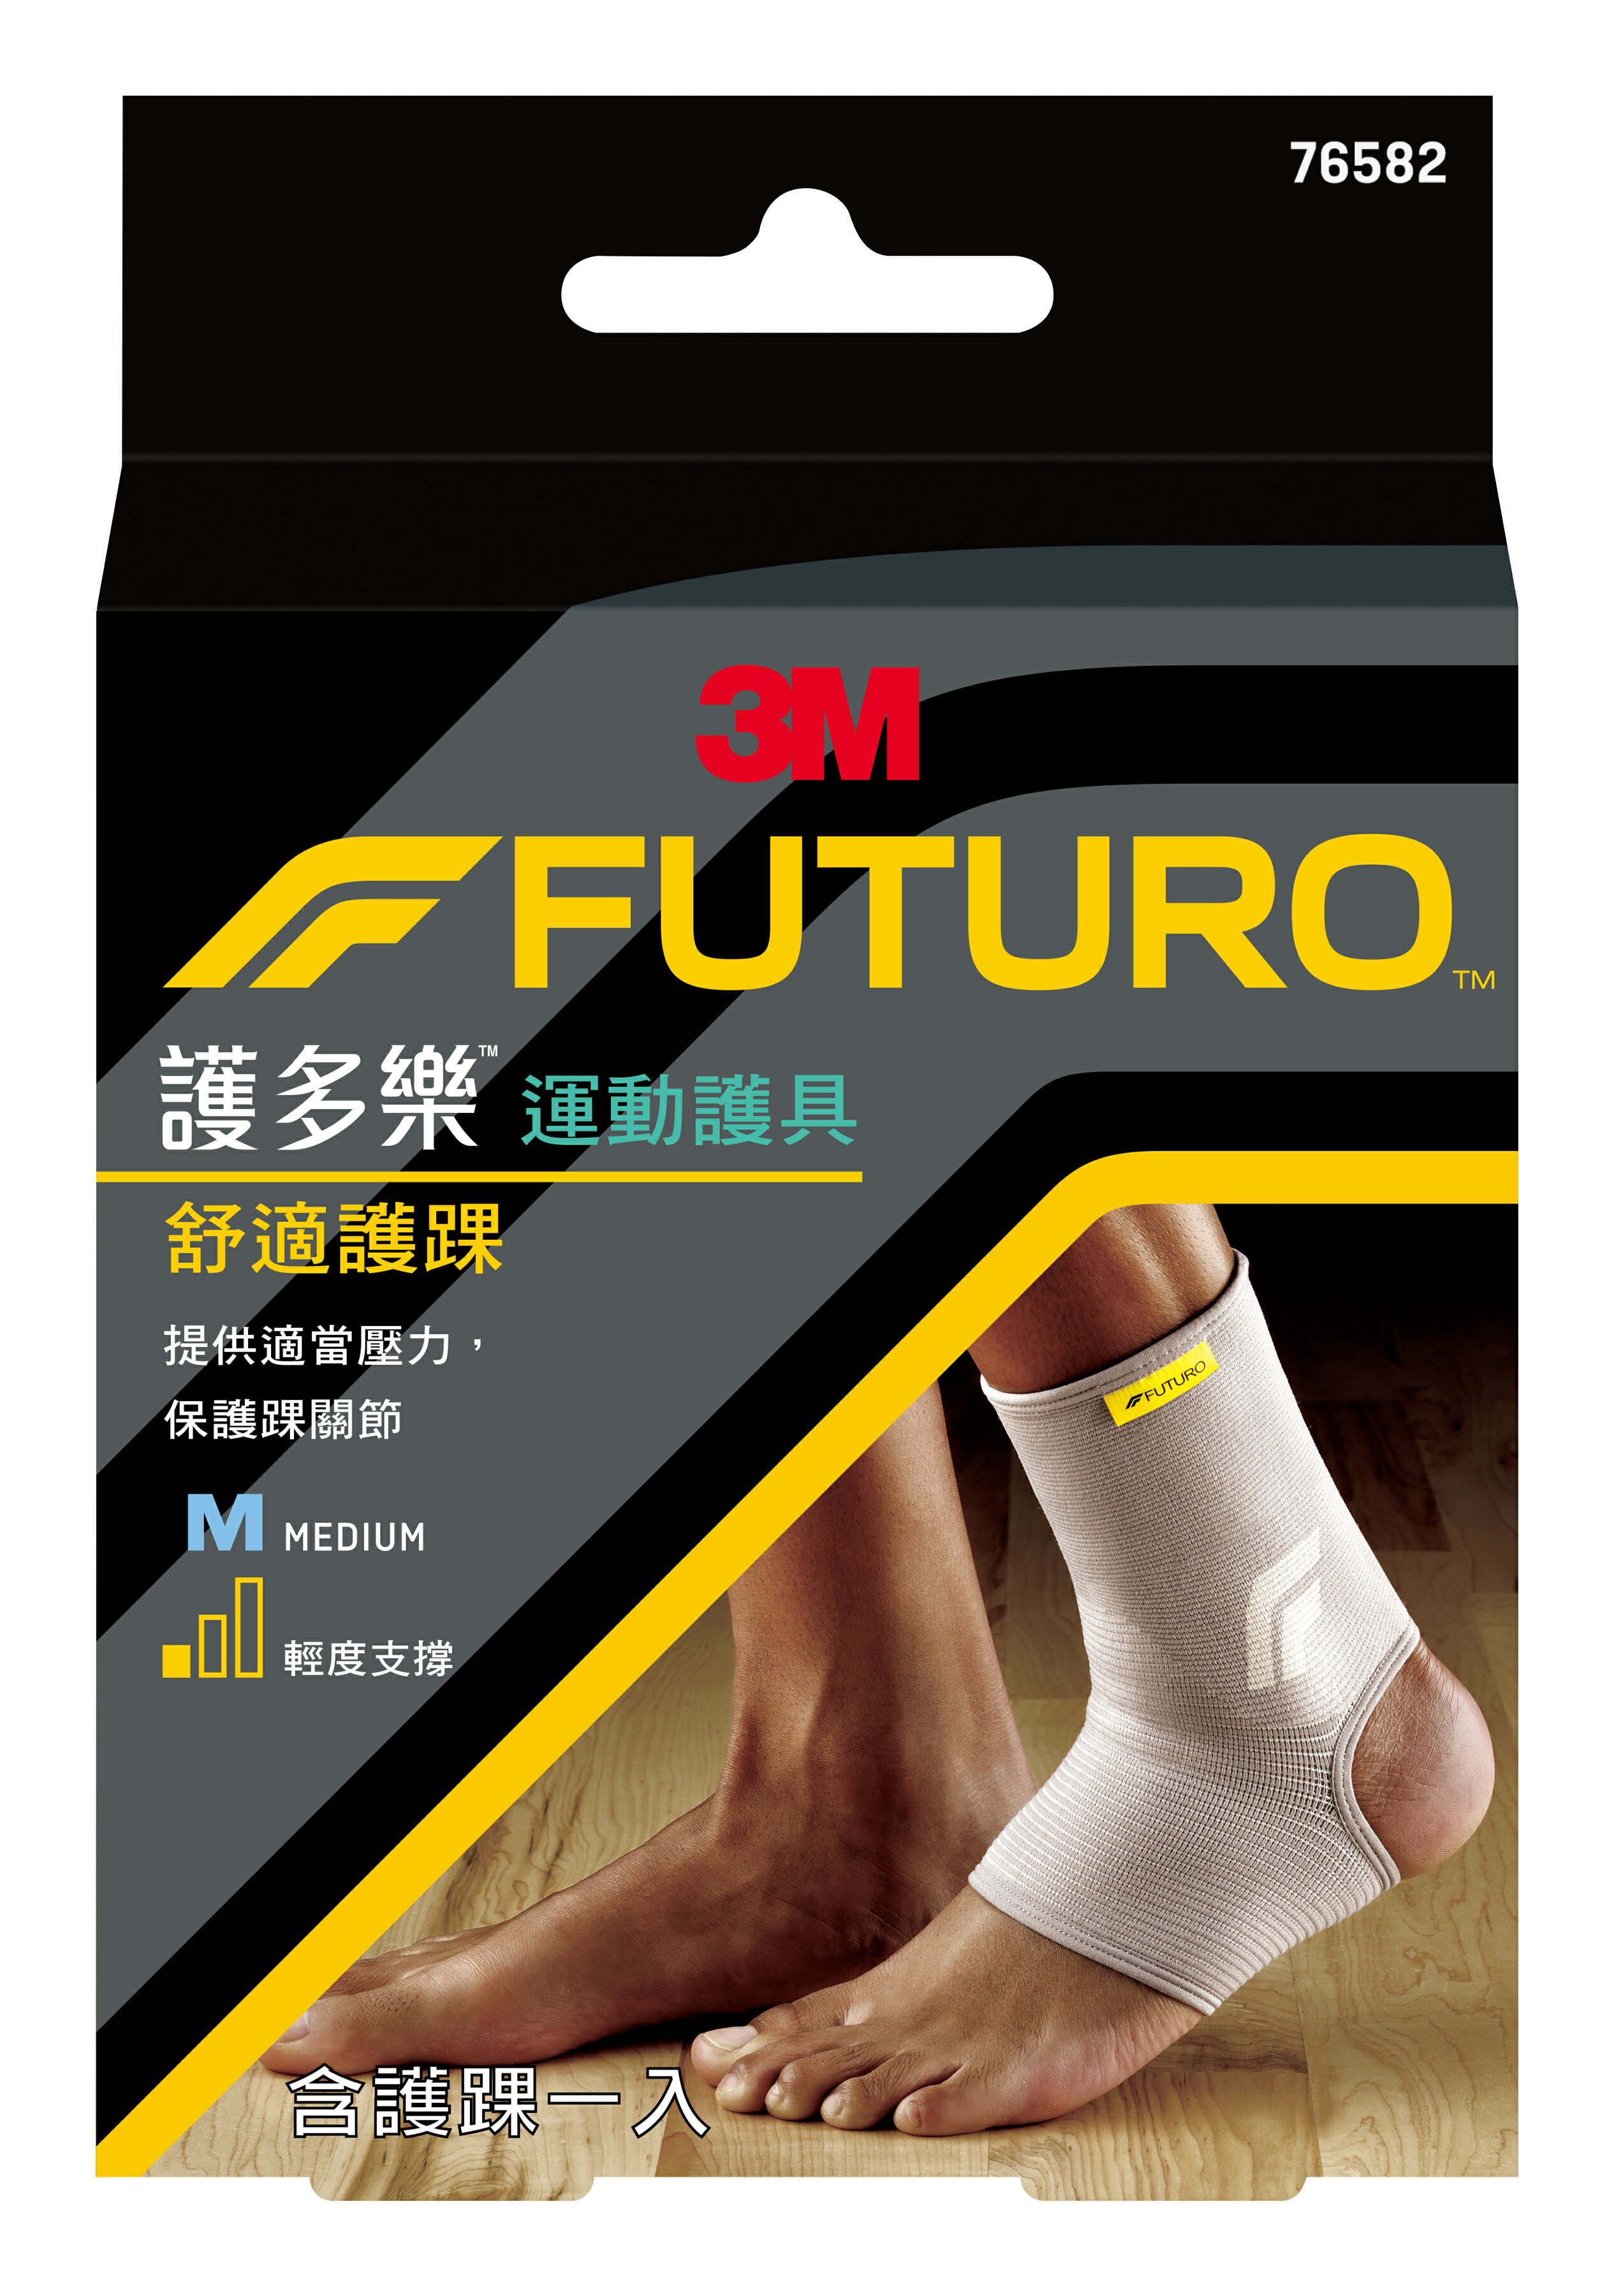 【醫護寶】3M-FUTURO 護多樂 舒適護踝